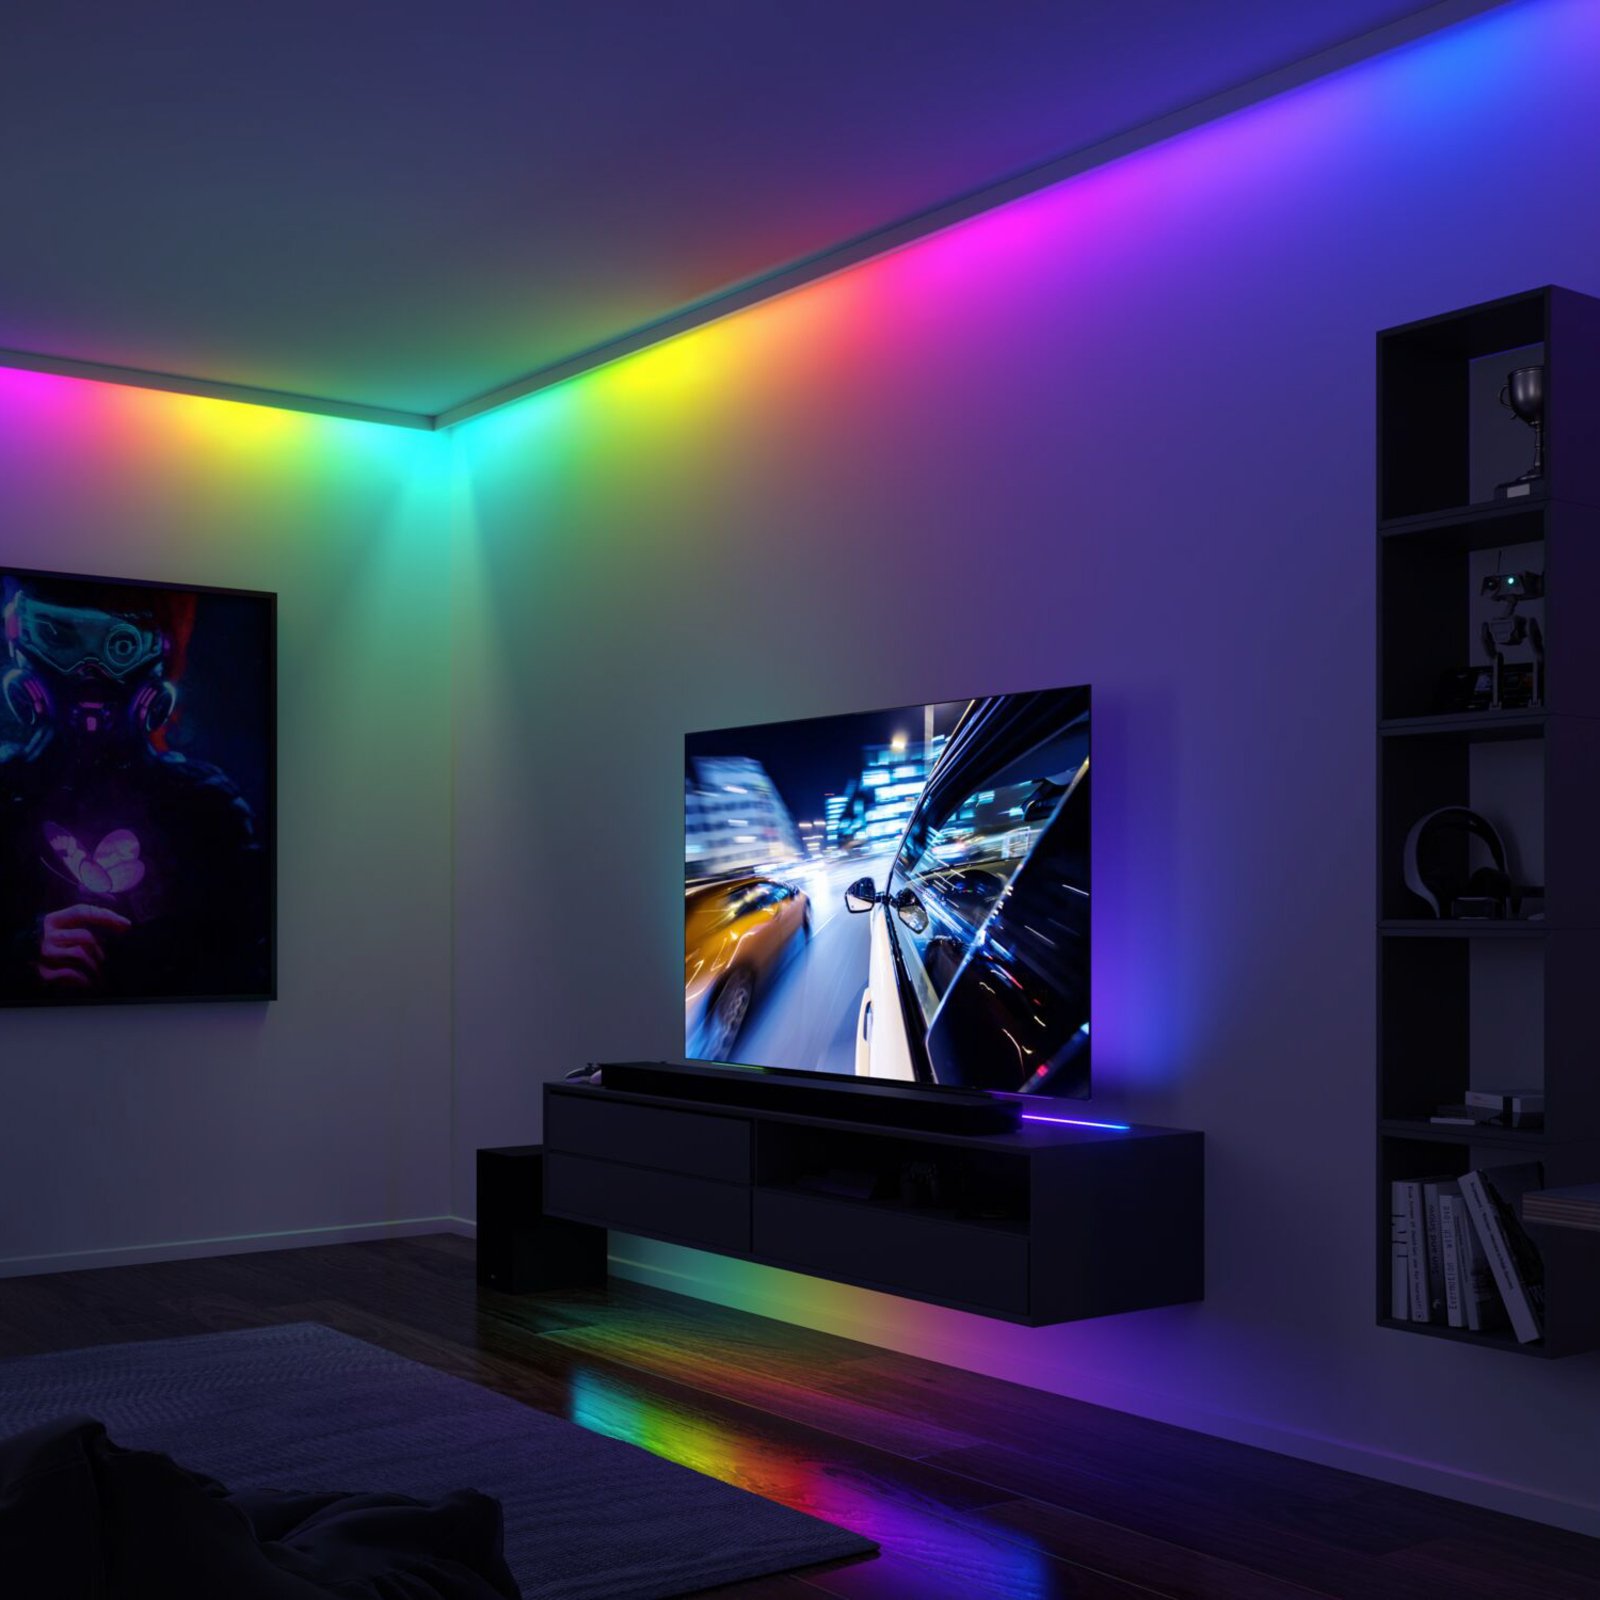 Paulmann EntertainLED LED strip, RGB, set, 1,5m